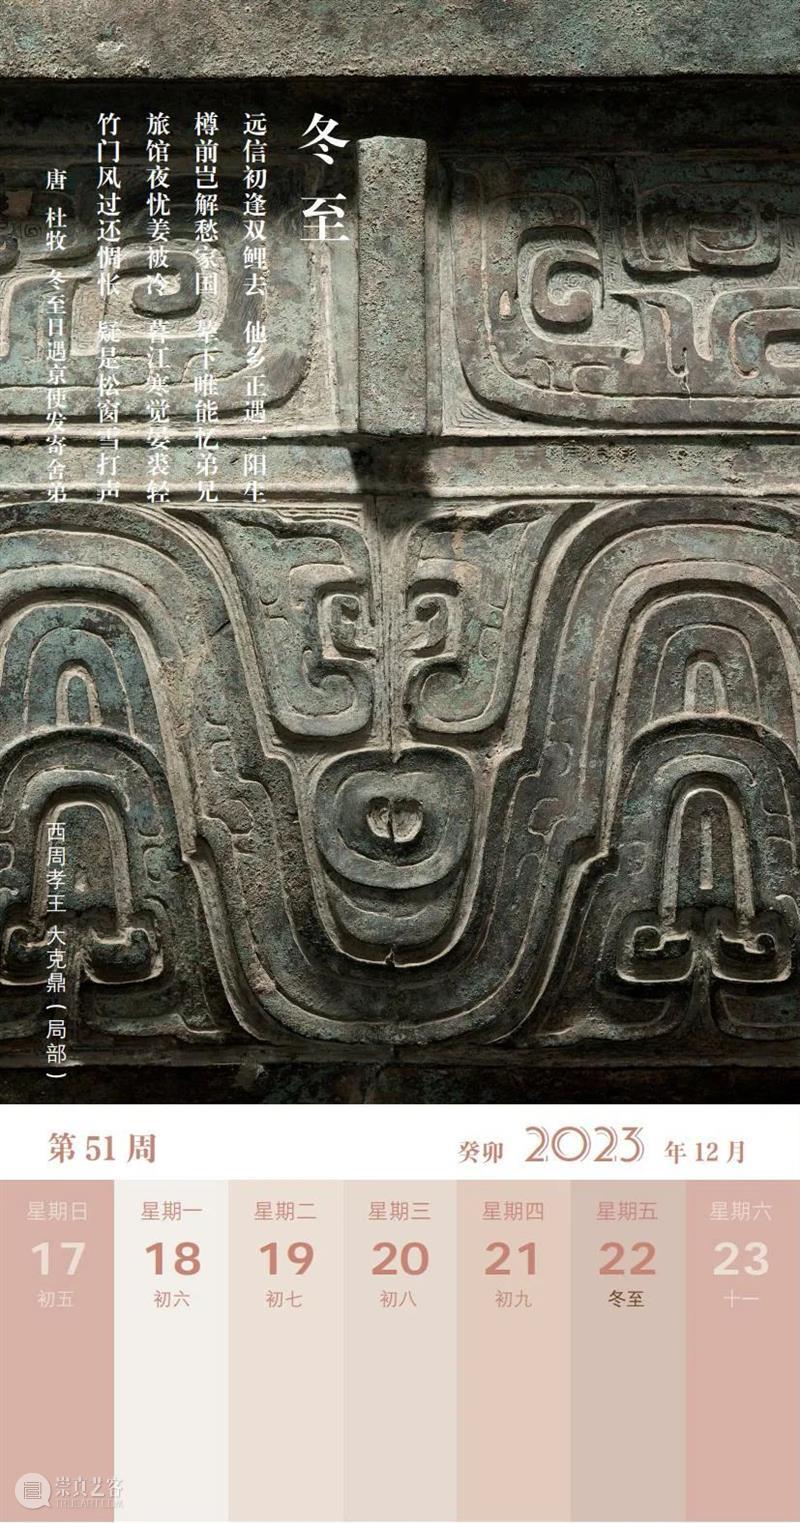 上博周历·2023：一座桌面博物馆 崇真艺客